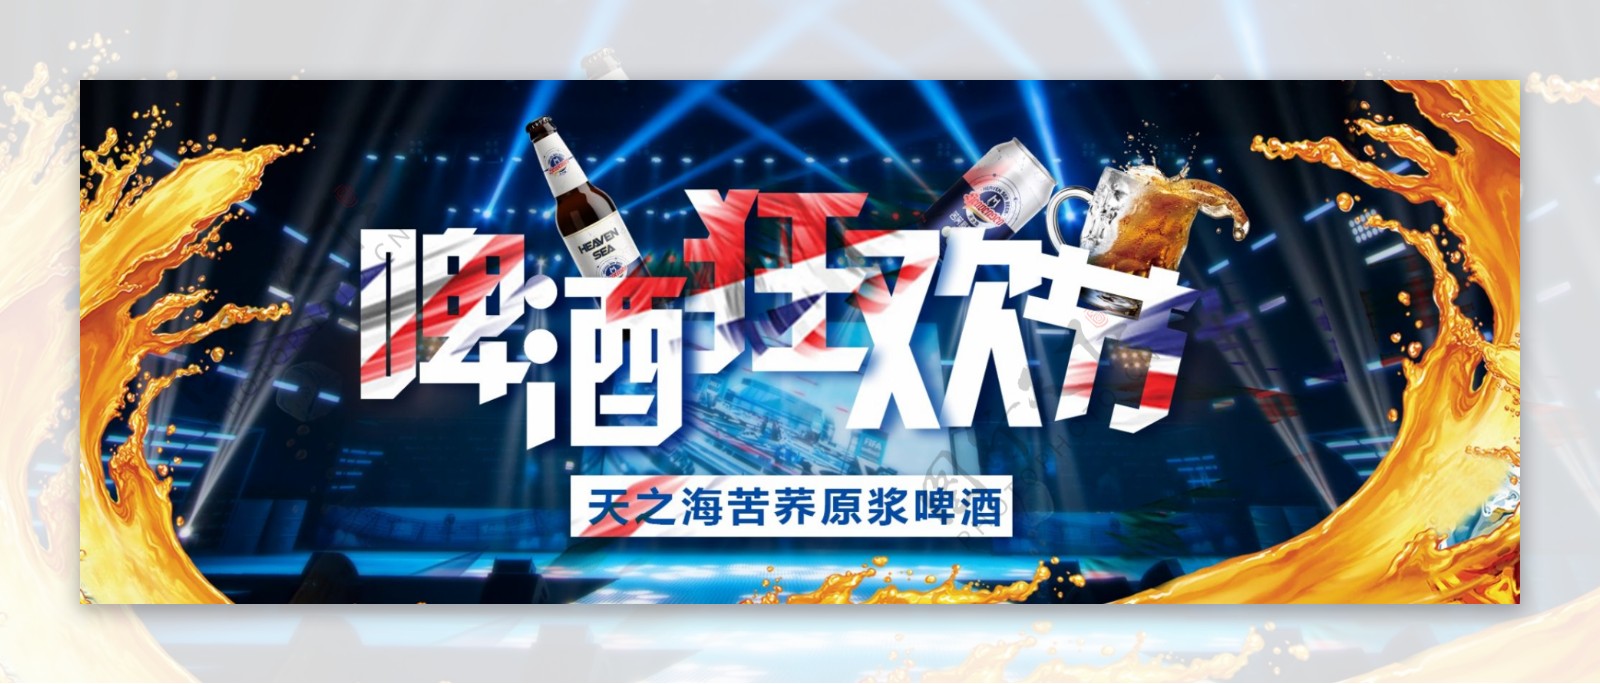 啤酒狂欢节banner